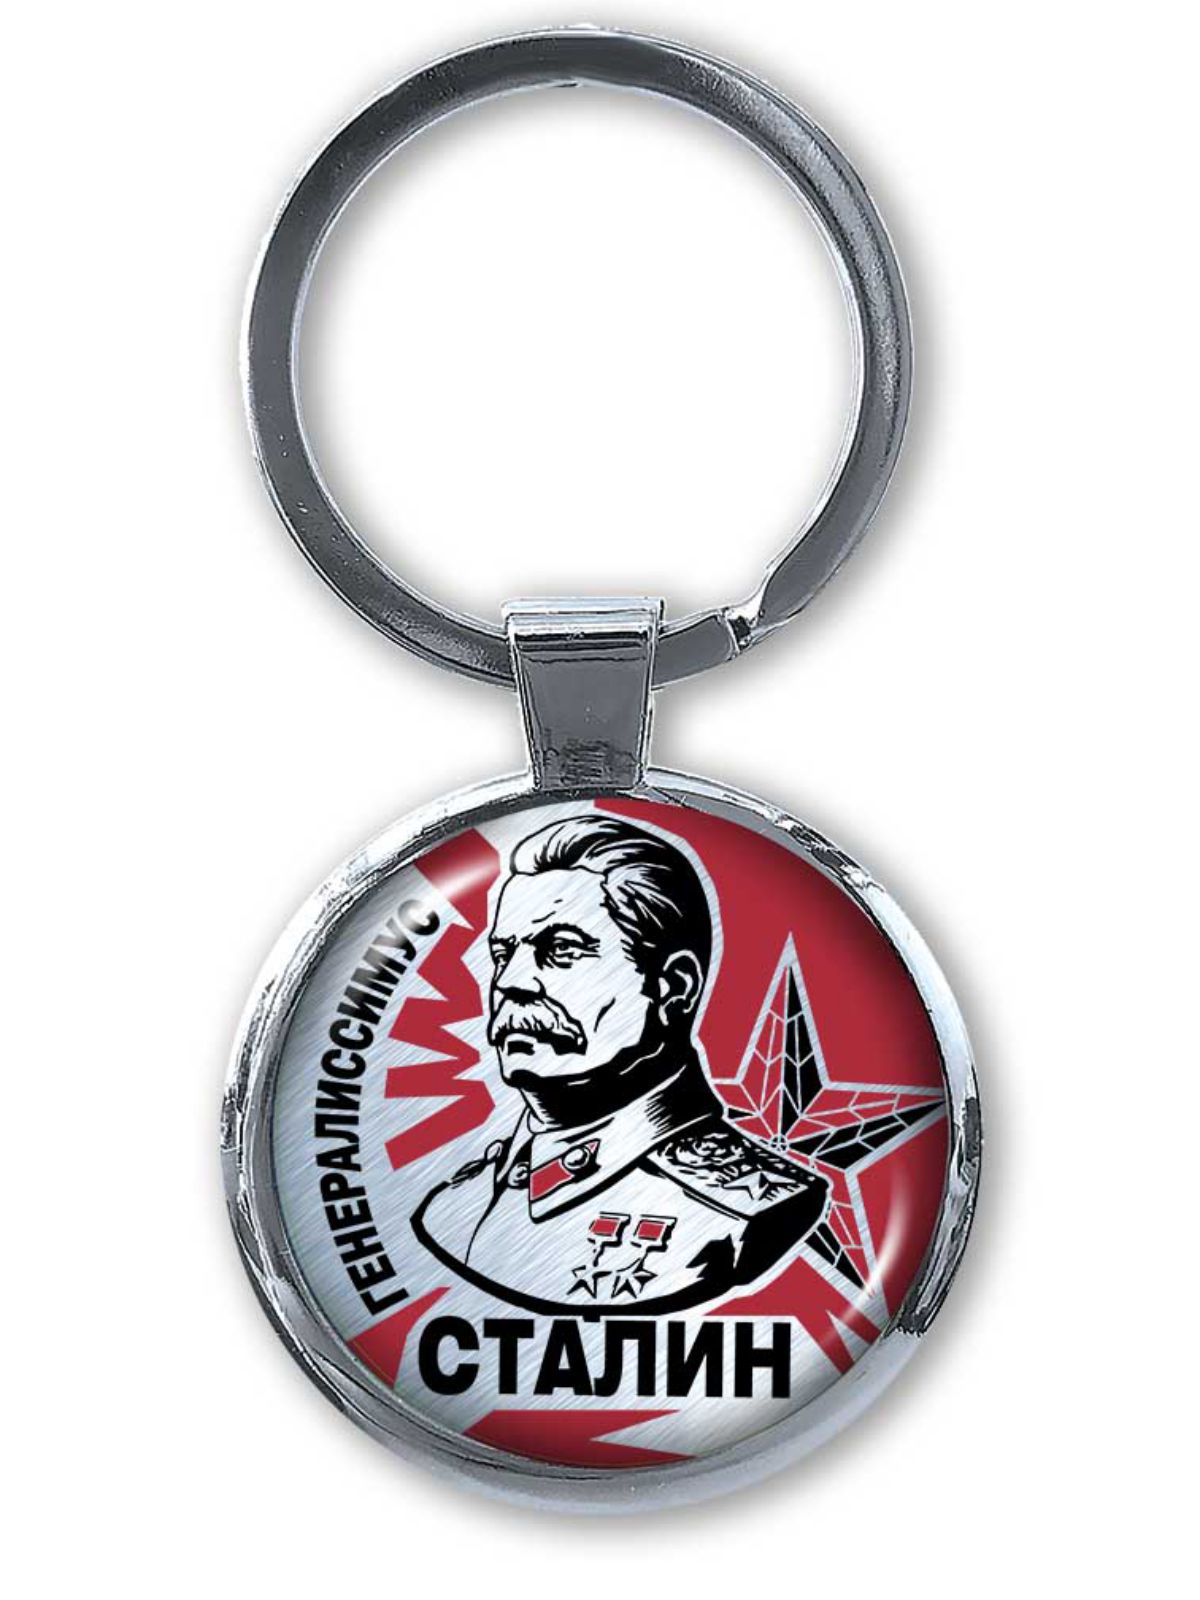 Оригинальный двухсторонний брелок "Сталин" 